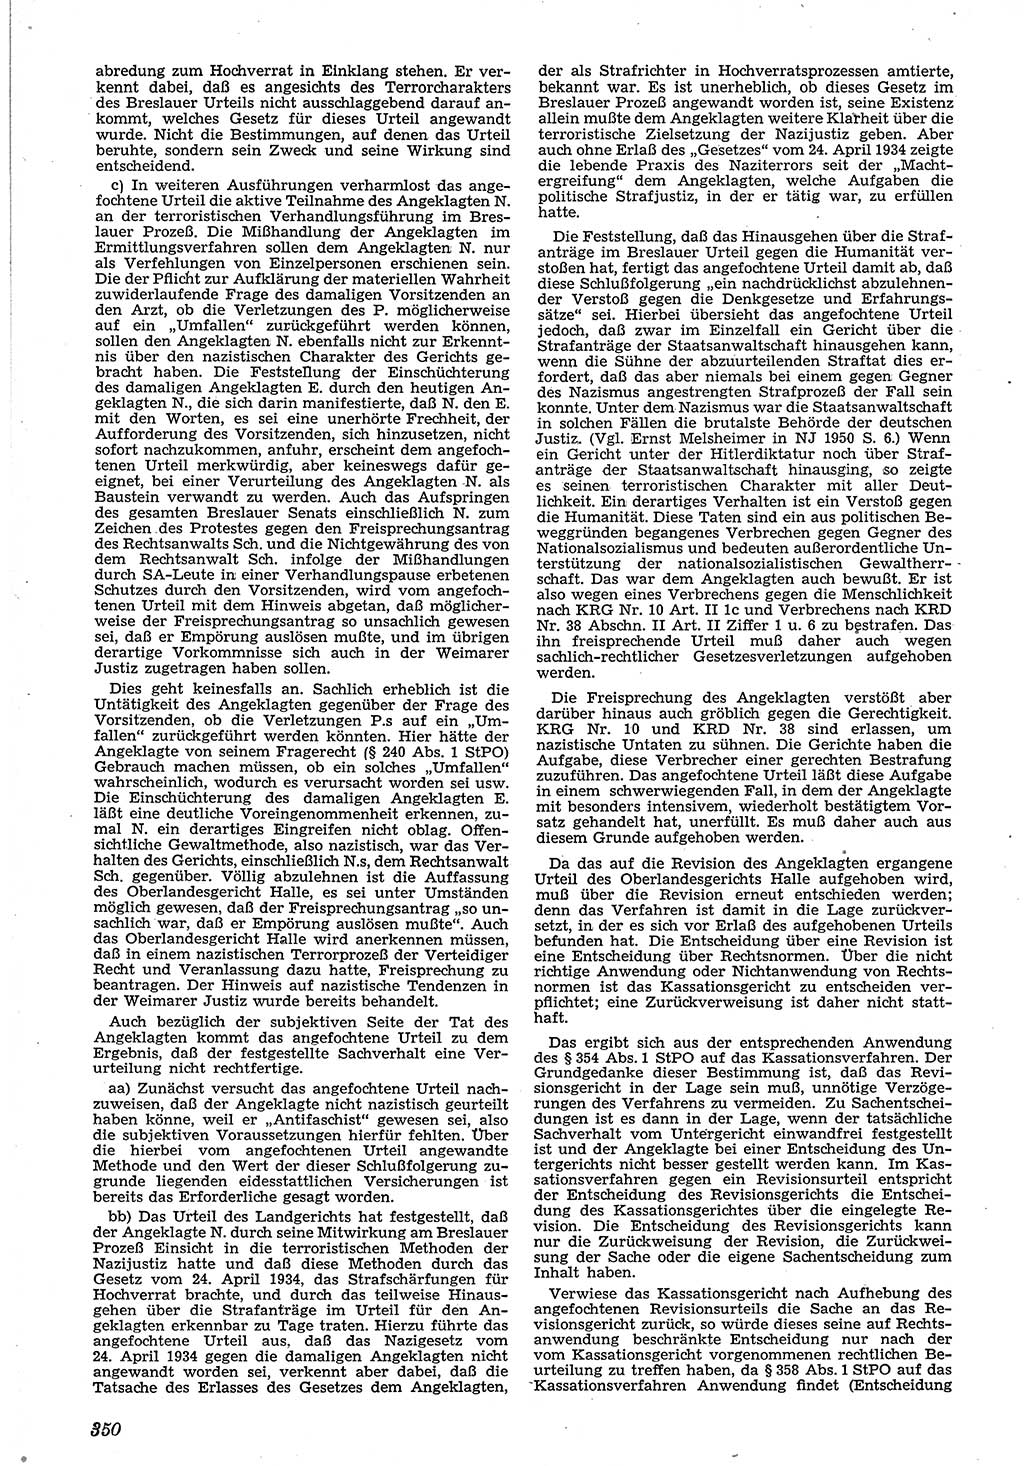 Neue Justiz (NJ), Zeitschrift für Recht und Rechtswissenschaft [Deutsche Demokratische Republik (DDR)], 4. Jahrgang 1950, Seite 350 (NJ DDR 1950, S. 350)